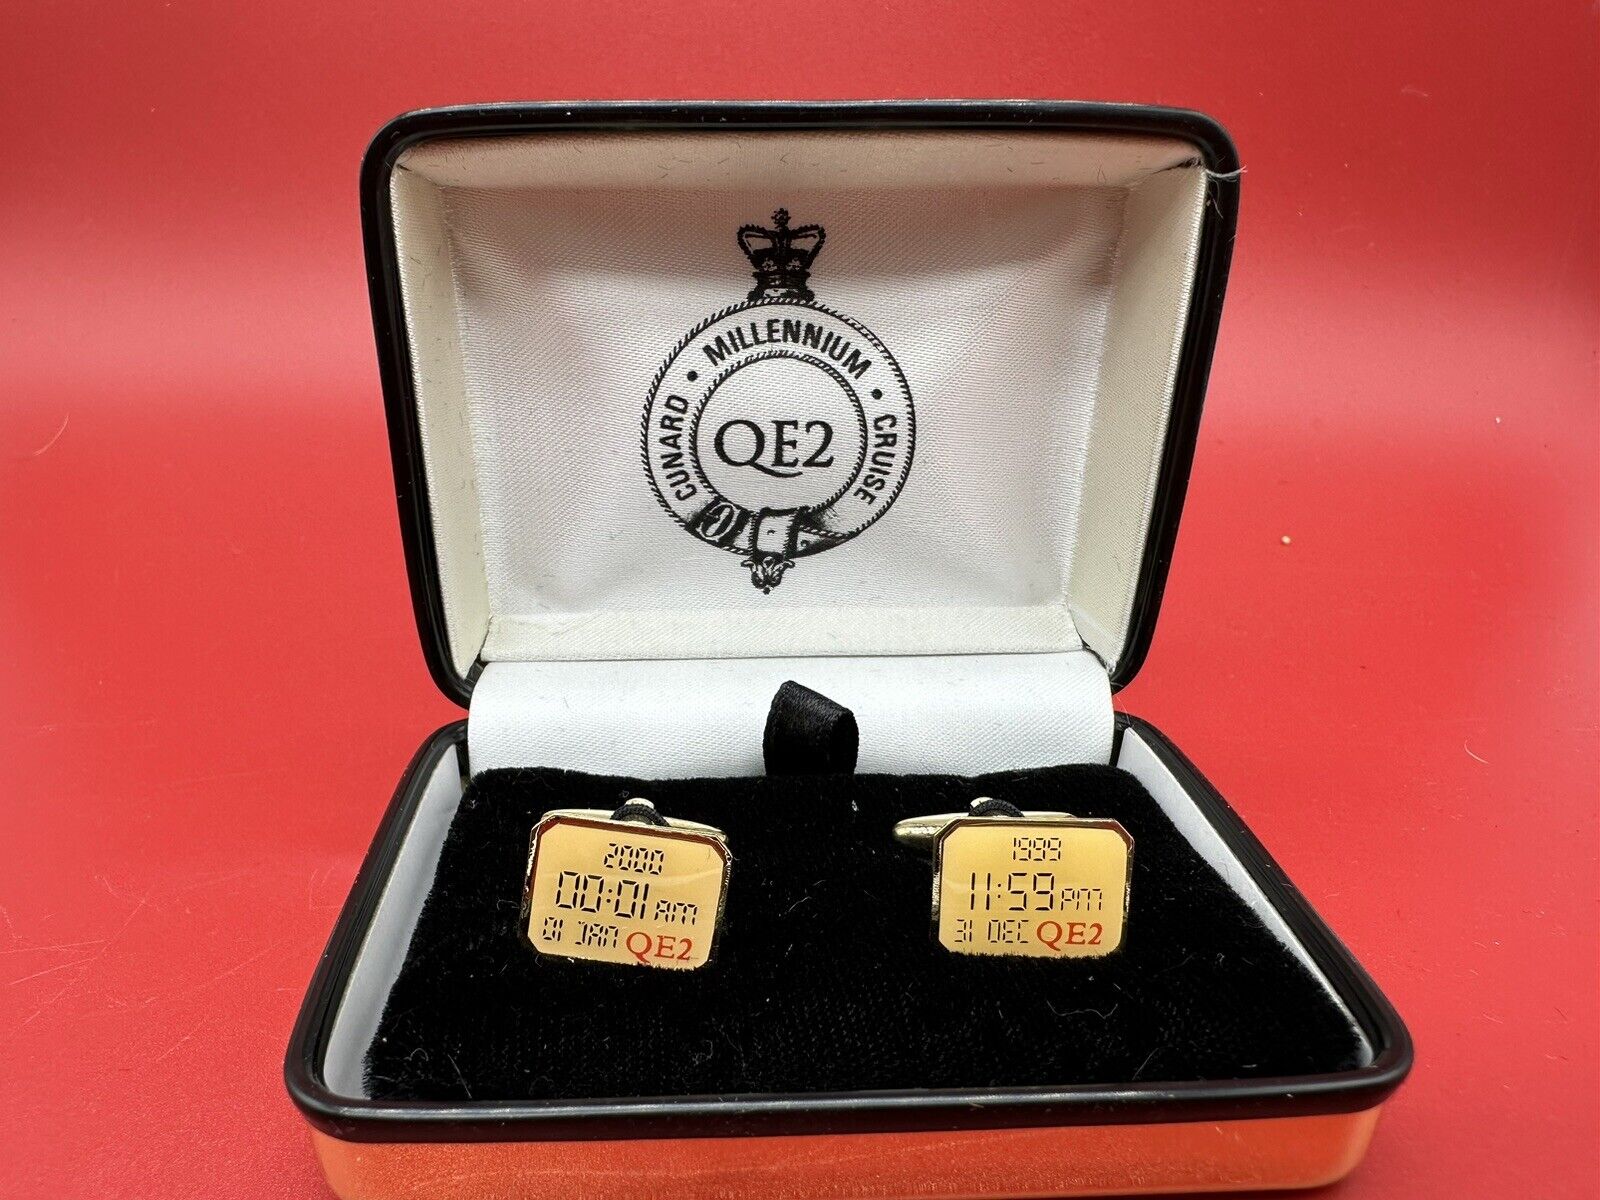 QE2 Queen Elizabeth 2 Millennium Cunard Cruise  Liner Cuff Links In Original Box